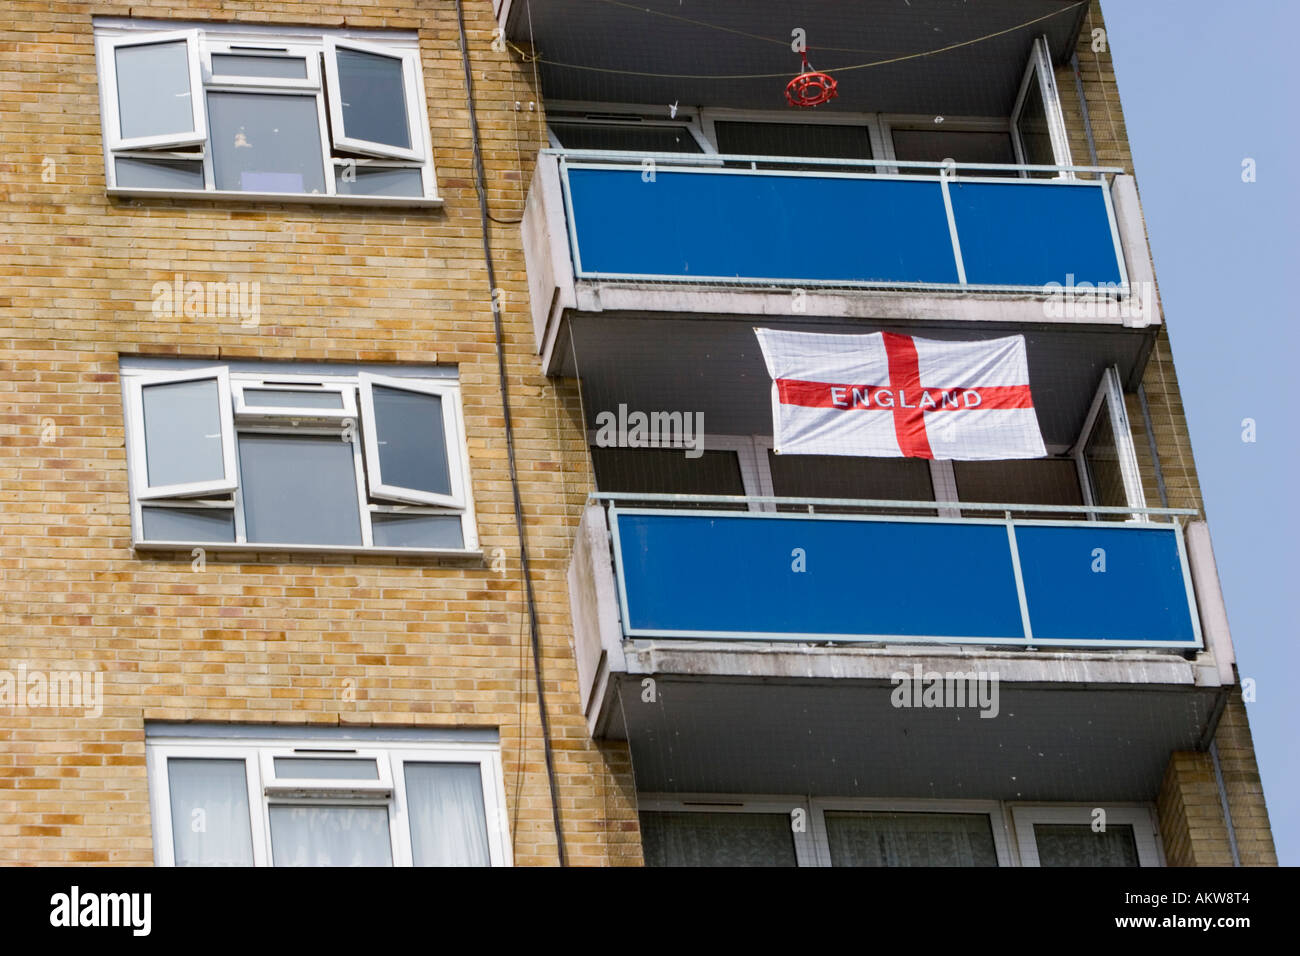 partidario-del-futbol-s-balcon-decorado-con-una-bandera-de-inglaterra-akw8t4.jpg